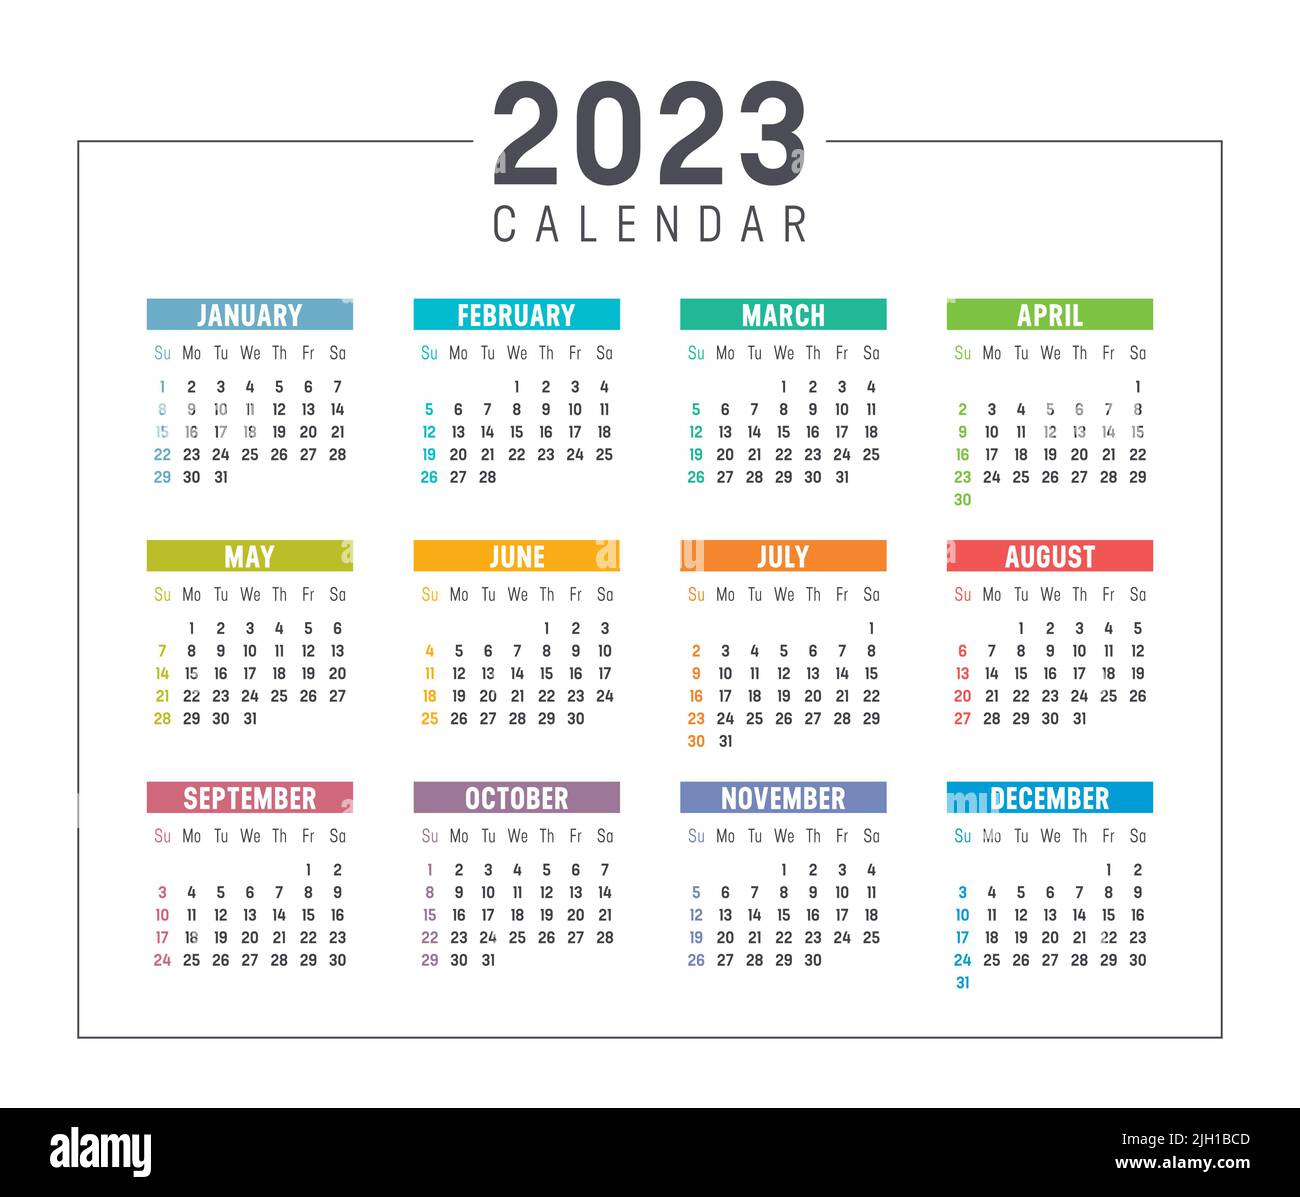 Calendario colorato anno 2023 isolato su sfondo bianco. La settimana inizia domenica. Modello vettoriale. Illustrazione Vettoriale